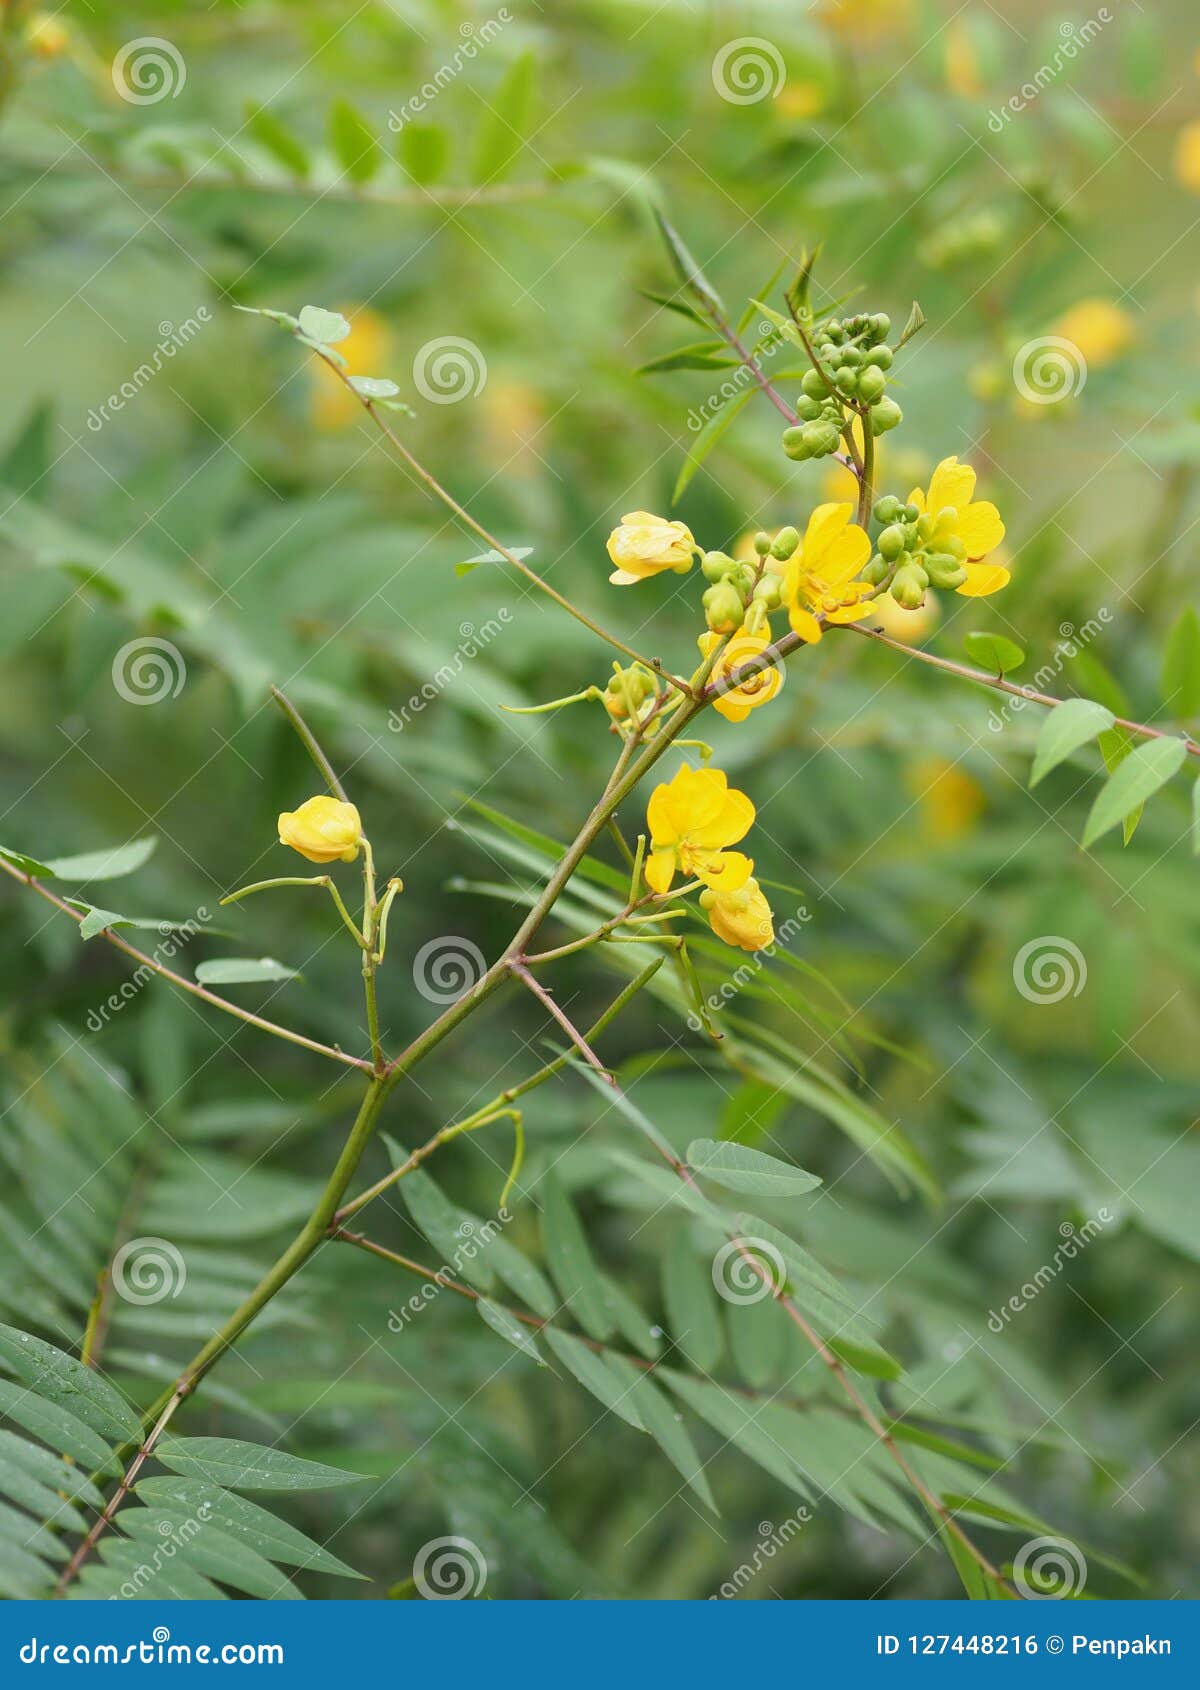 senna siamea leguminosae,yellow flower